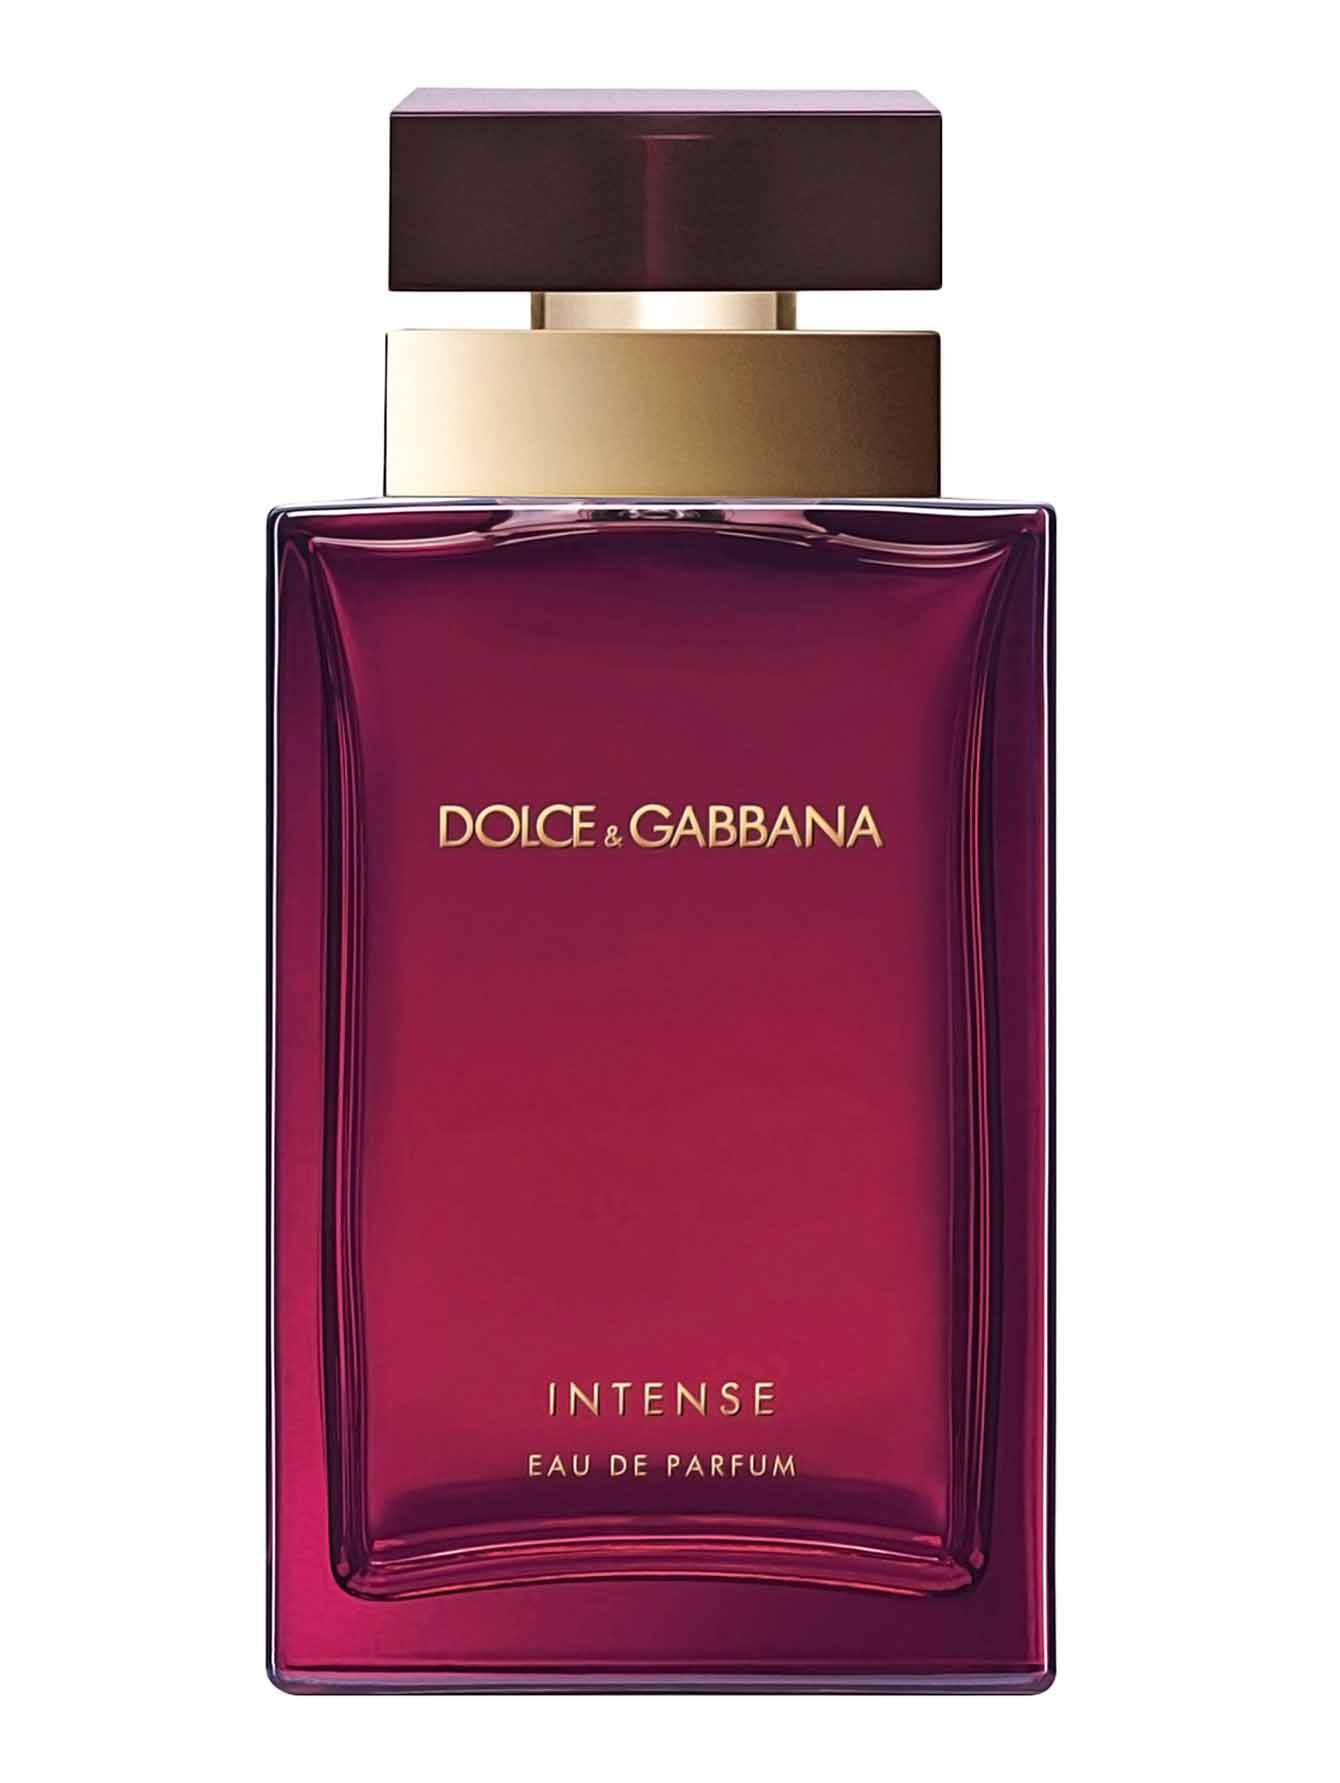 Дольче габбана парфюм новинка. Dolce & Gabbana pour femme 100 мл. Дольче Габбана Интенс. Dolce&Gabbana pour femme intense. Dolce Gabbana intense женские 100ml.